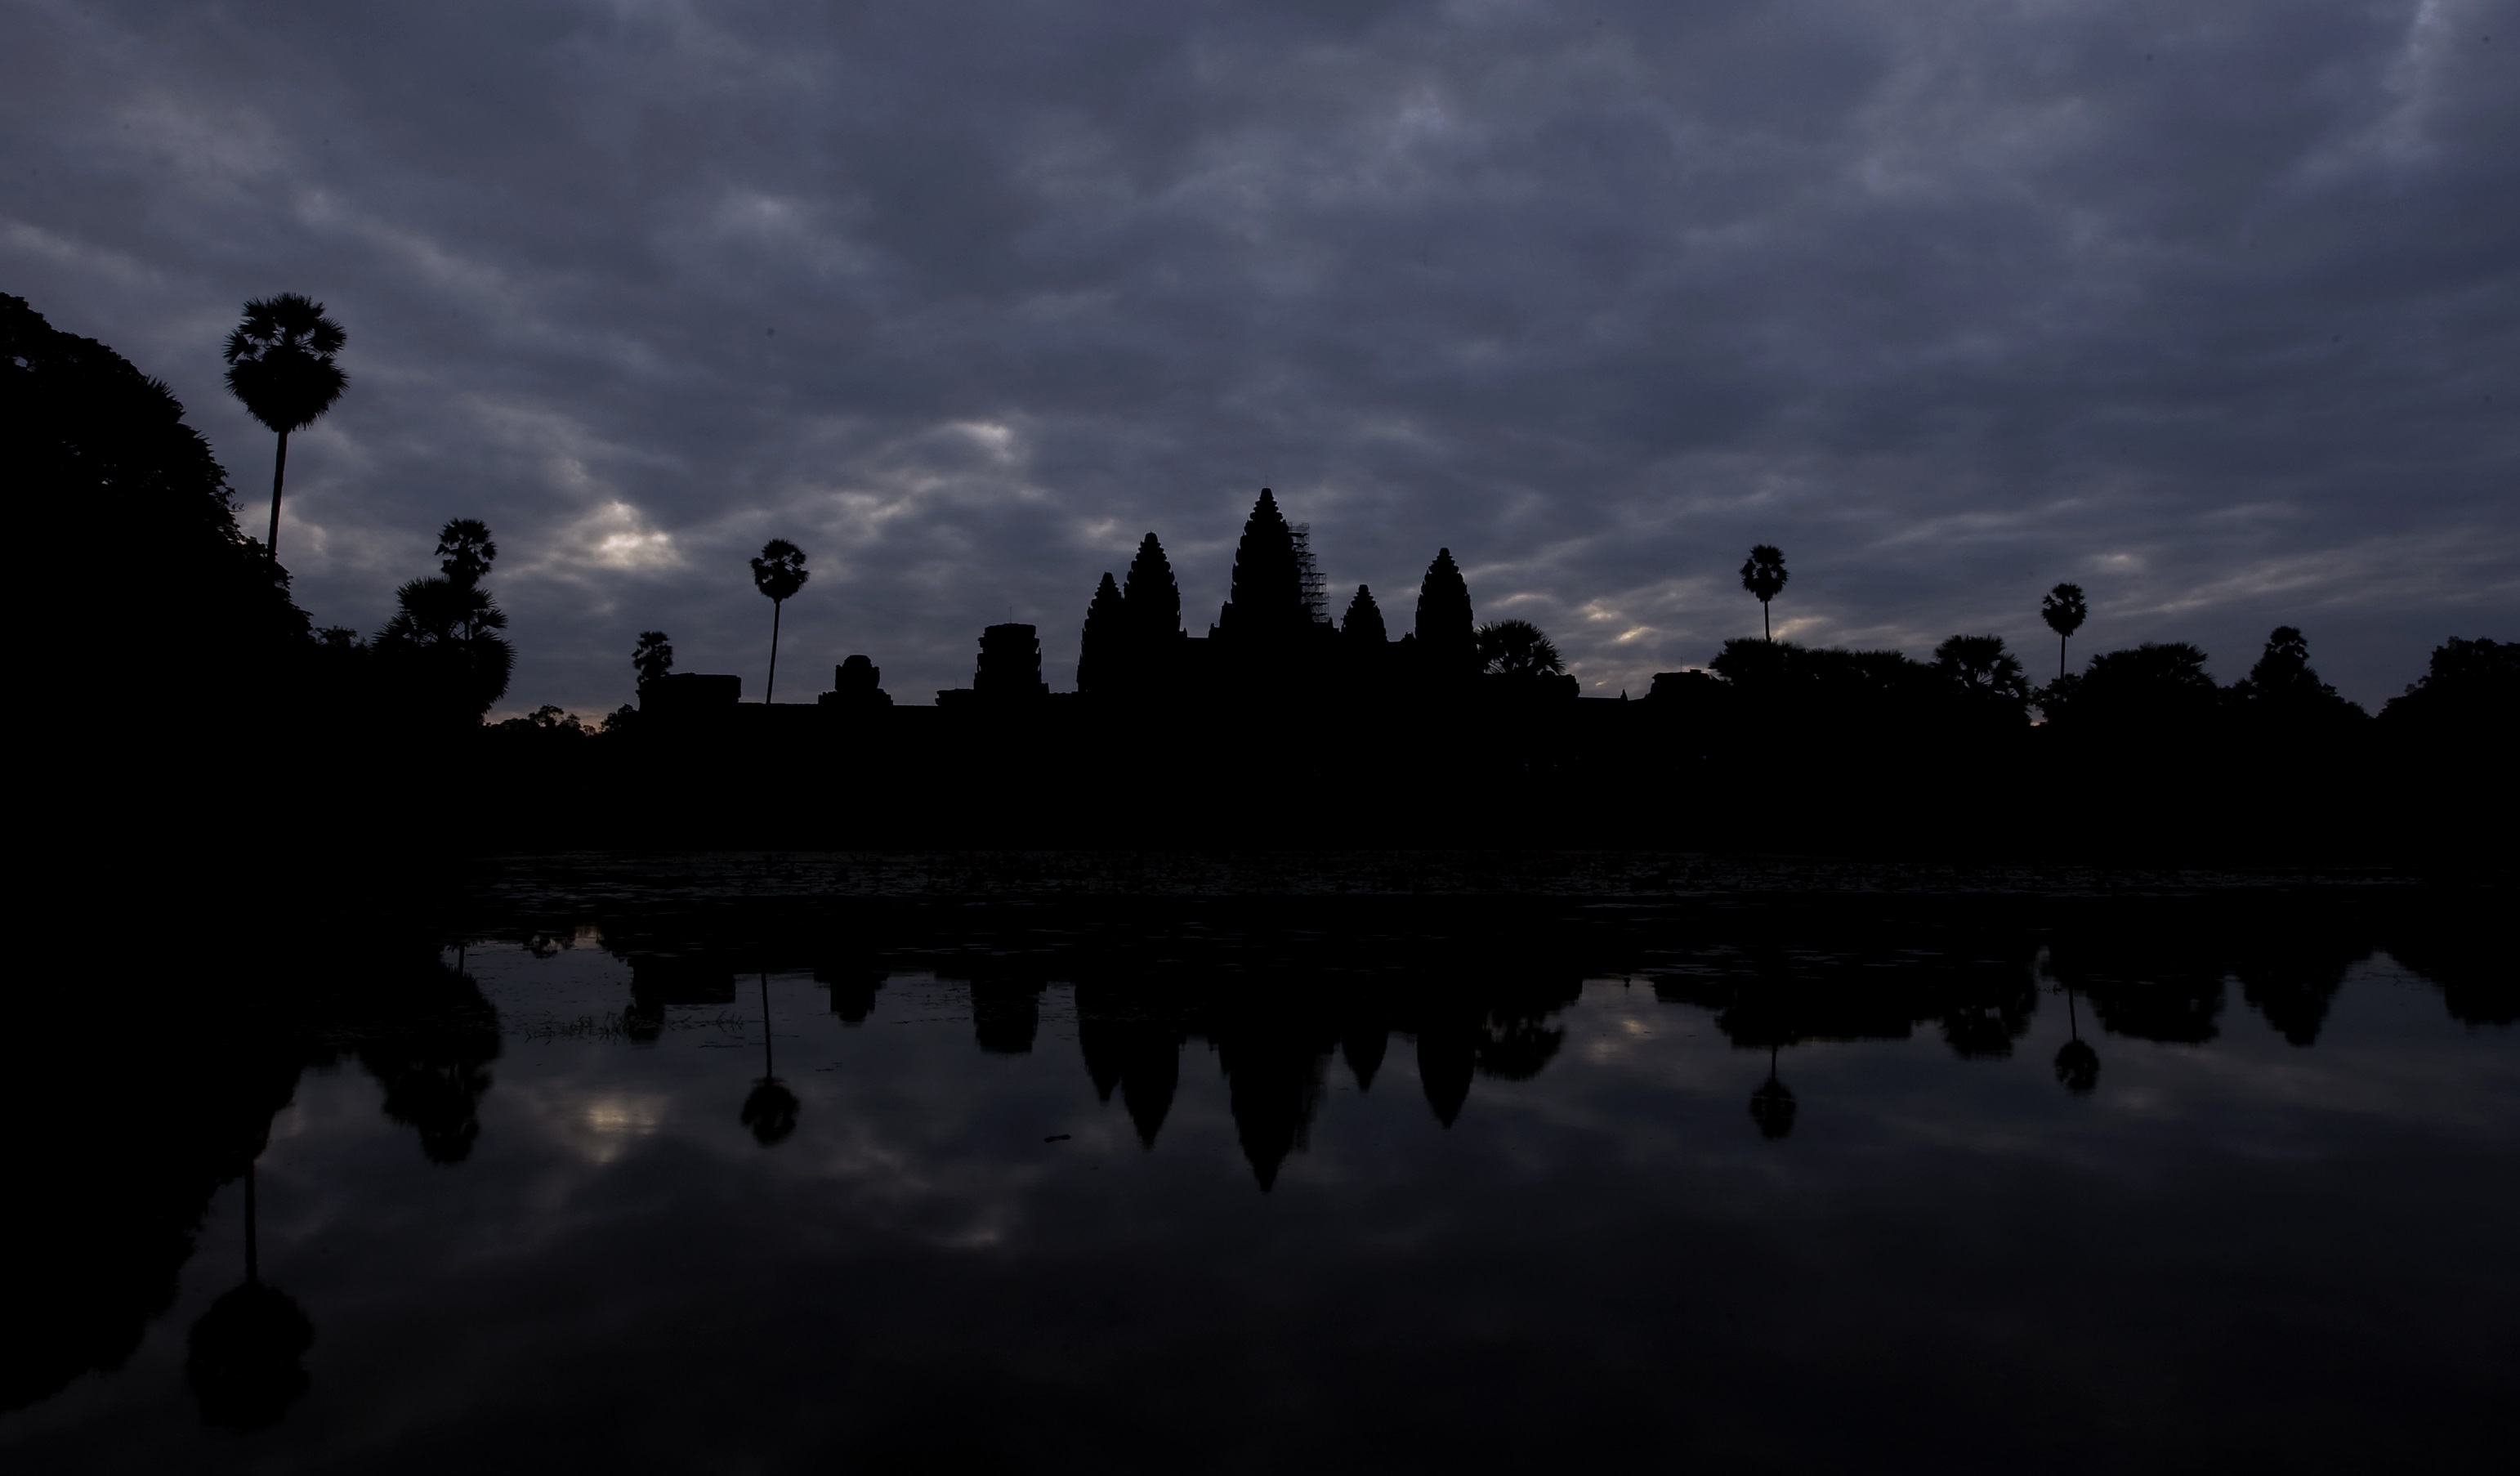 Ангкор Ват е най-големият религиозен паметник в света, построен през 12 век в Ангкор, Камбоджа. Някои го смятат за едно от най-важните археологически съкровища. Името му означава "град на храмове". Изящността му не стига да се опише, формите му са като на нито една друга сграда в света. Кулите му не се побират в човешкия гений, разказва BBC. Ангкор Ват е построен от владетеля на Кхмерската империя Суряварман II в началото на XII век в тогавашната столица Ясодхарапура (днешен Ангкор) като държавен храм и бъдещ мавзолей на монарха.